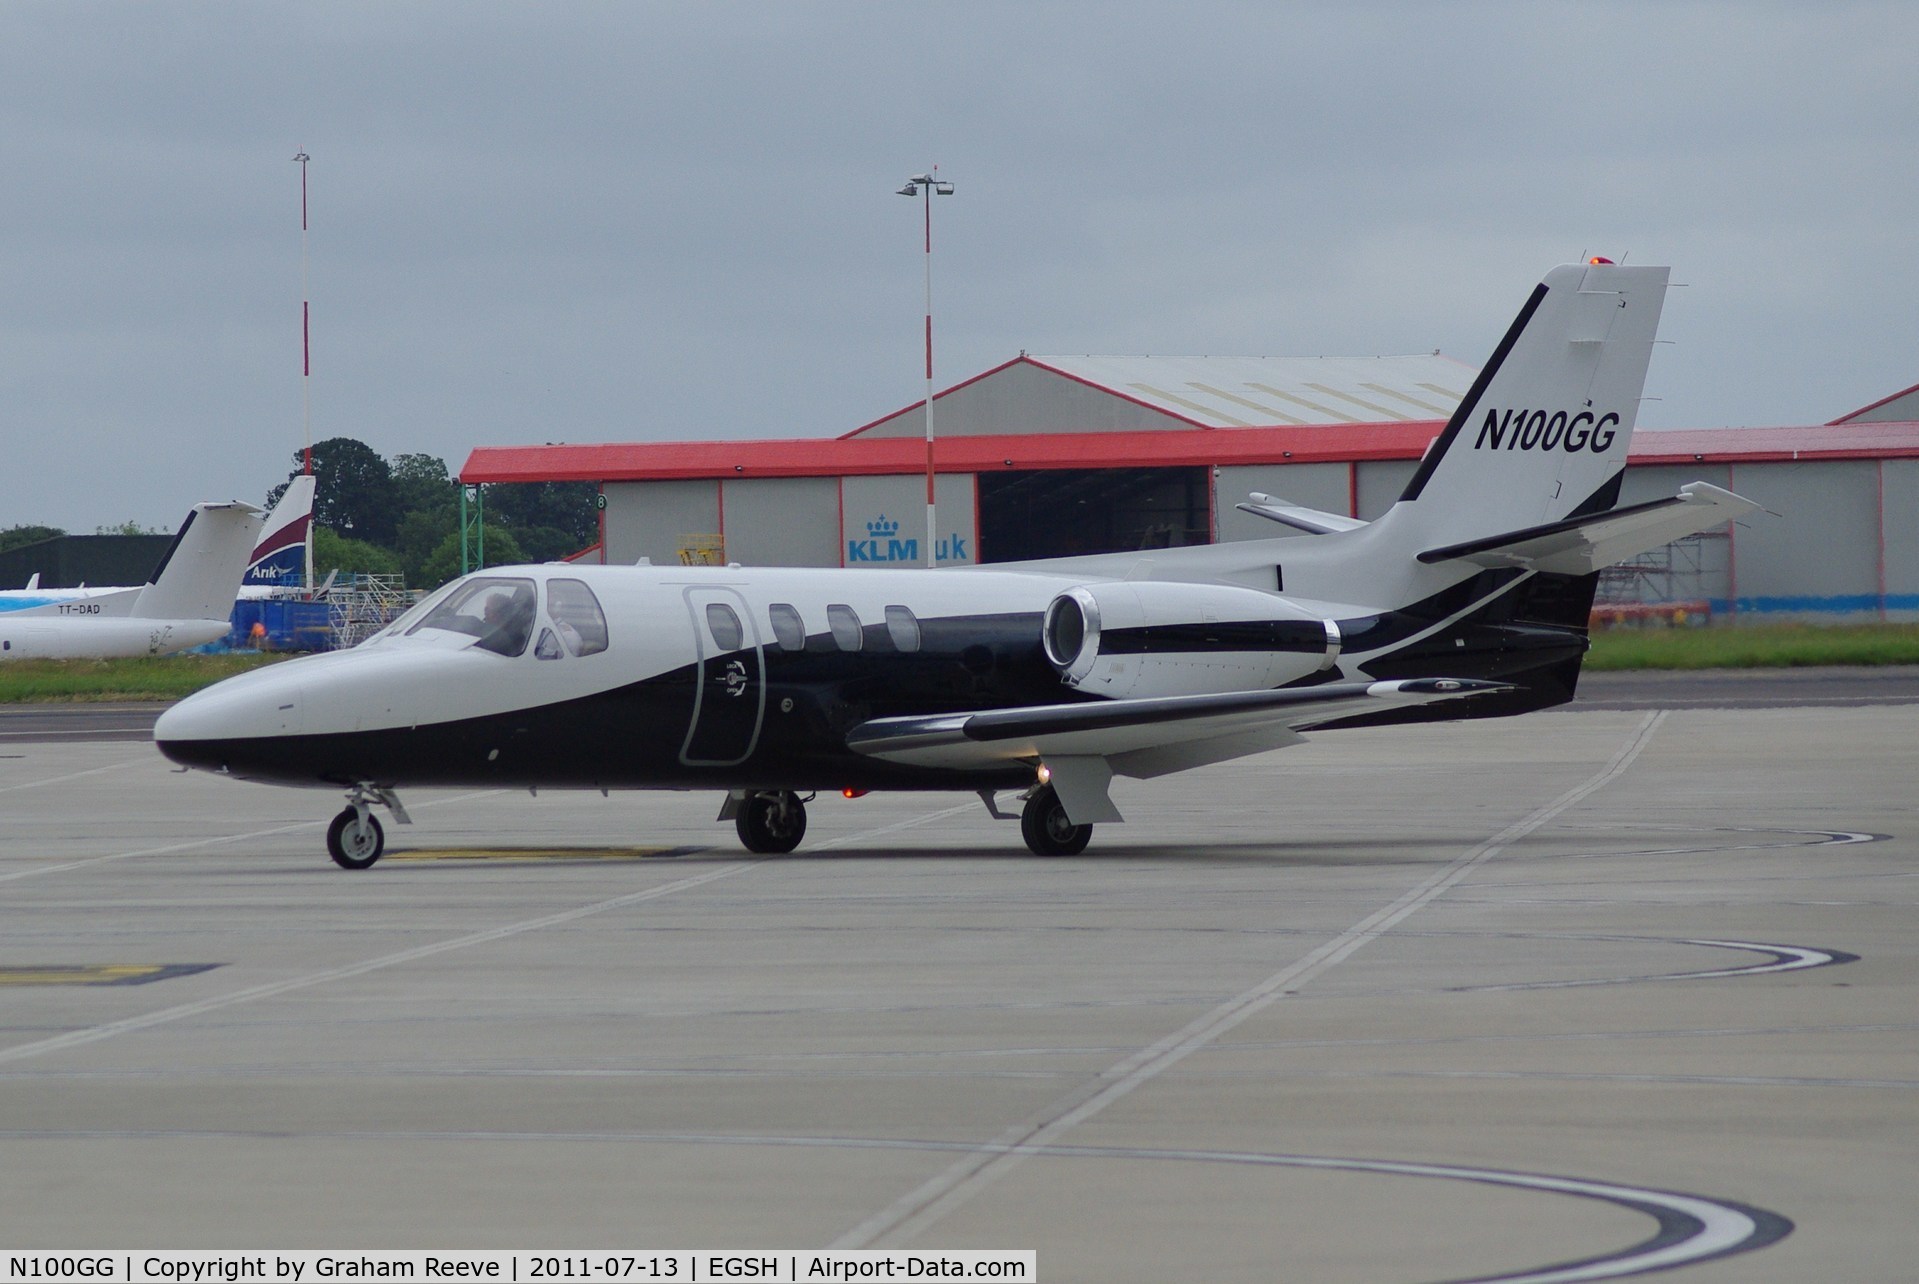 N100GG, 1977 Cessna 501 Citation I/SP C/N 501-0020, Just arrived at Norwich.